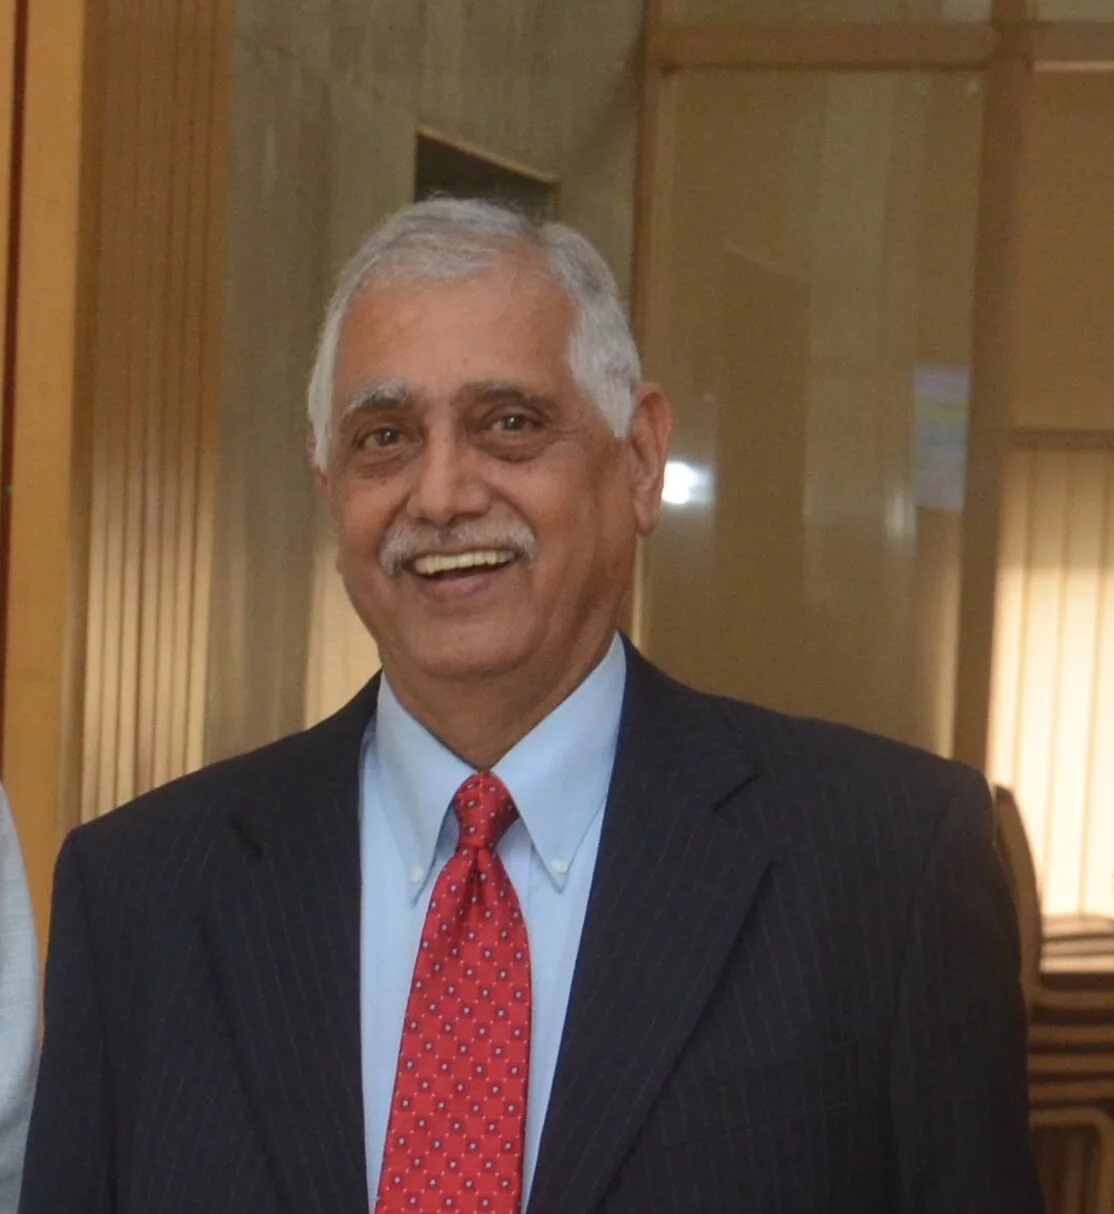 Dr. (Col.) Chandra Shekhar Pant